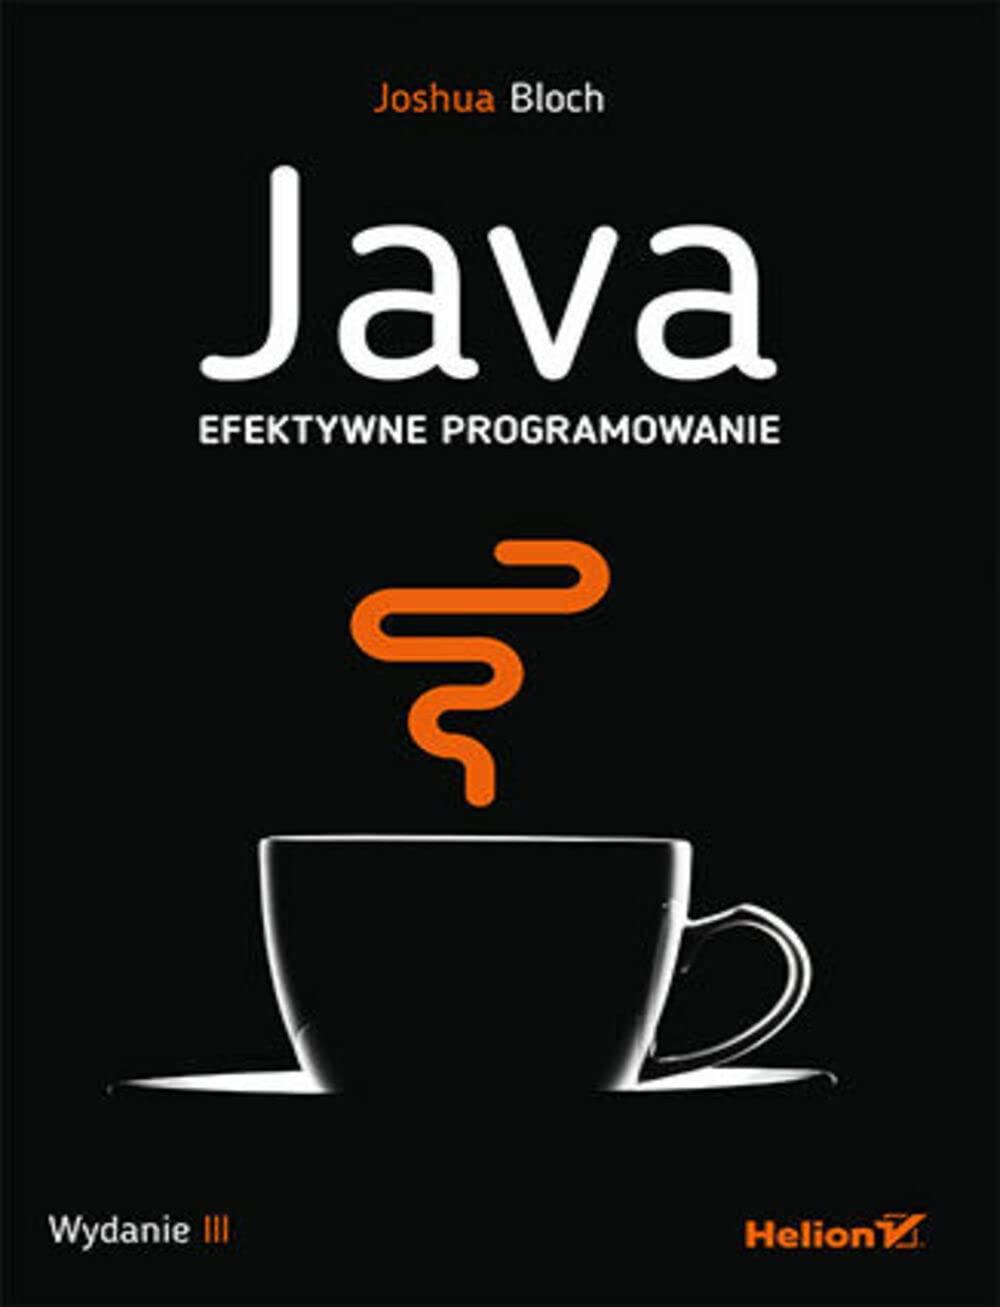 java efektywne programowanie 1st edition joshua bloch 8328398966, 978-8328398962